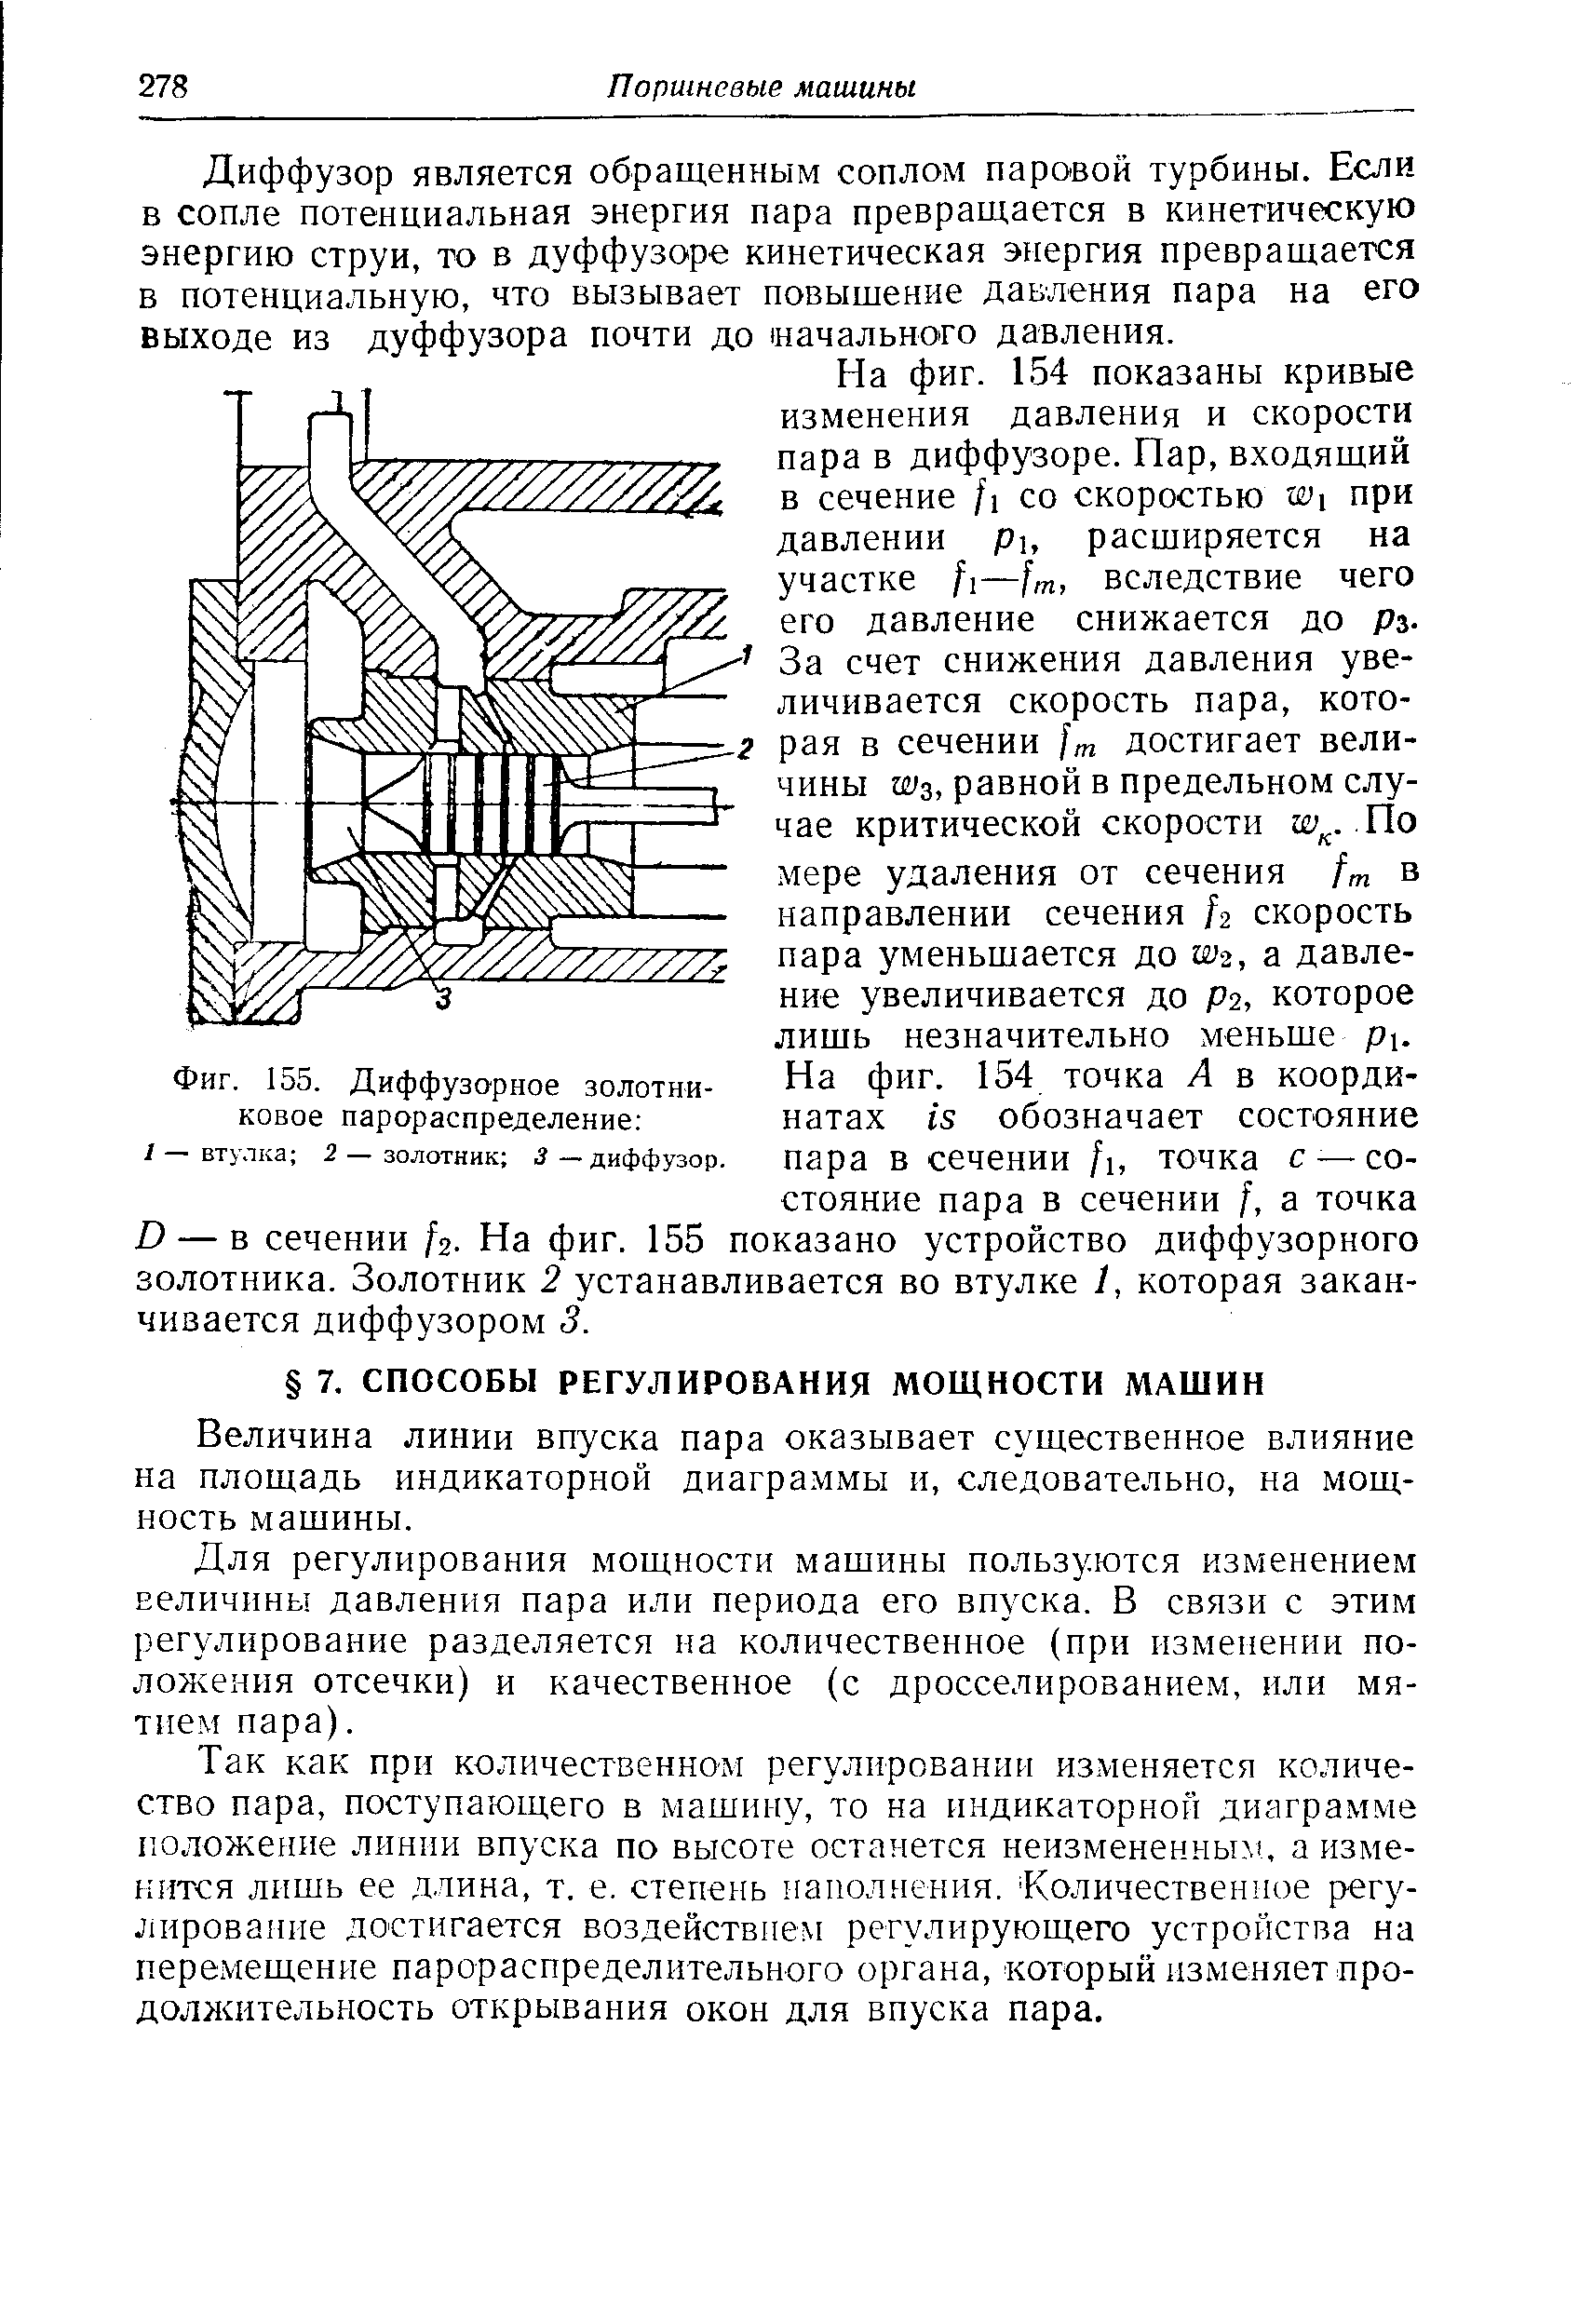 Фиг. 155. Диффузорное золотниковое парораспределение 
